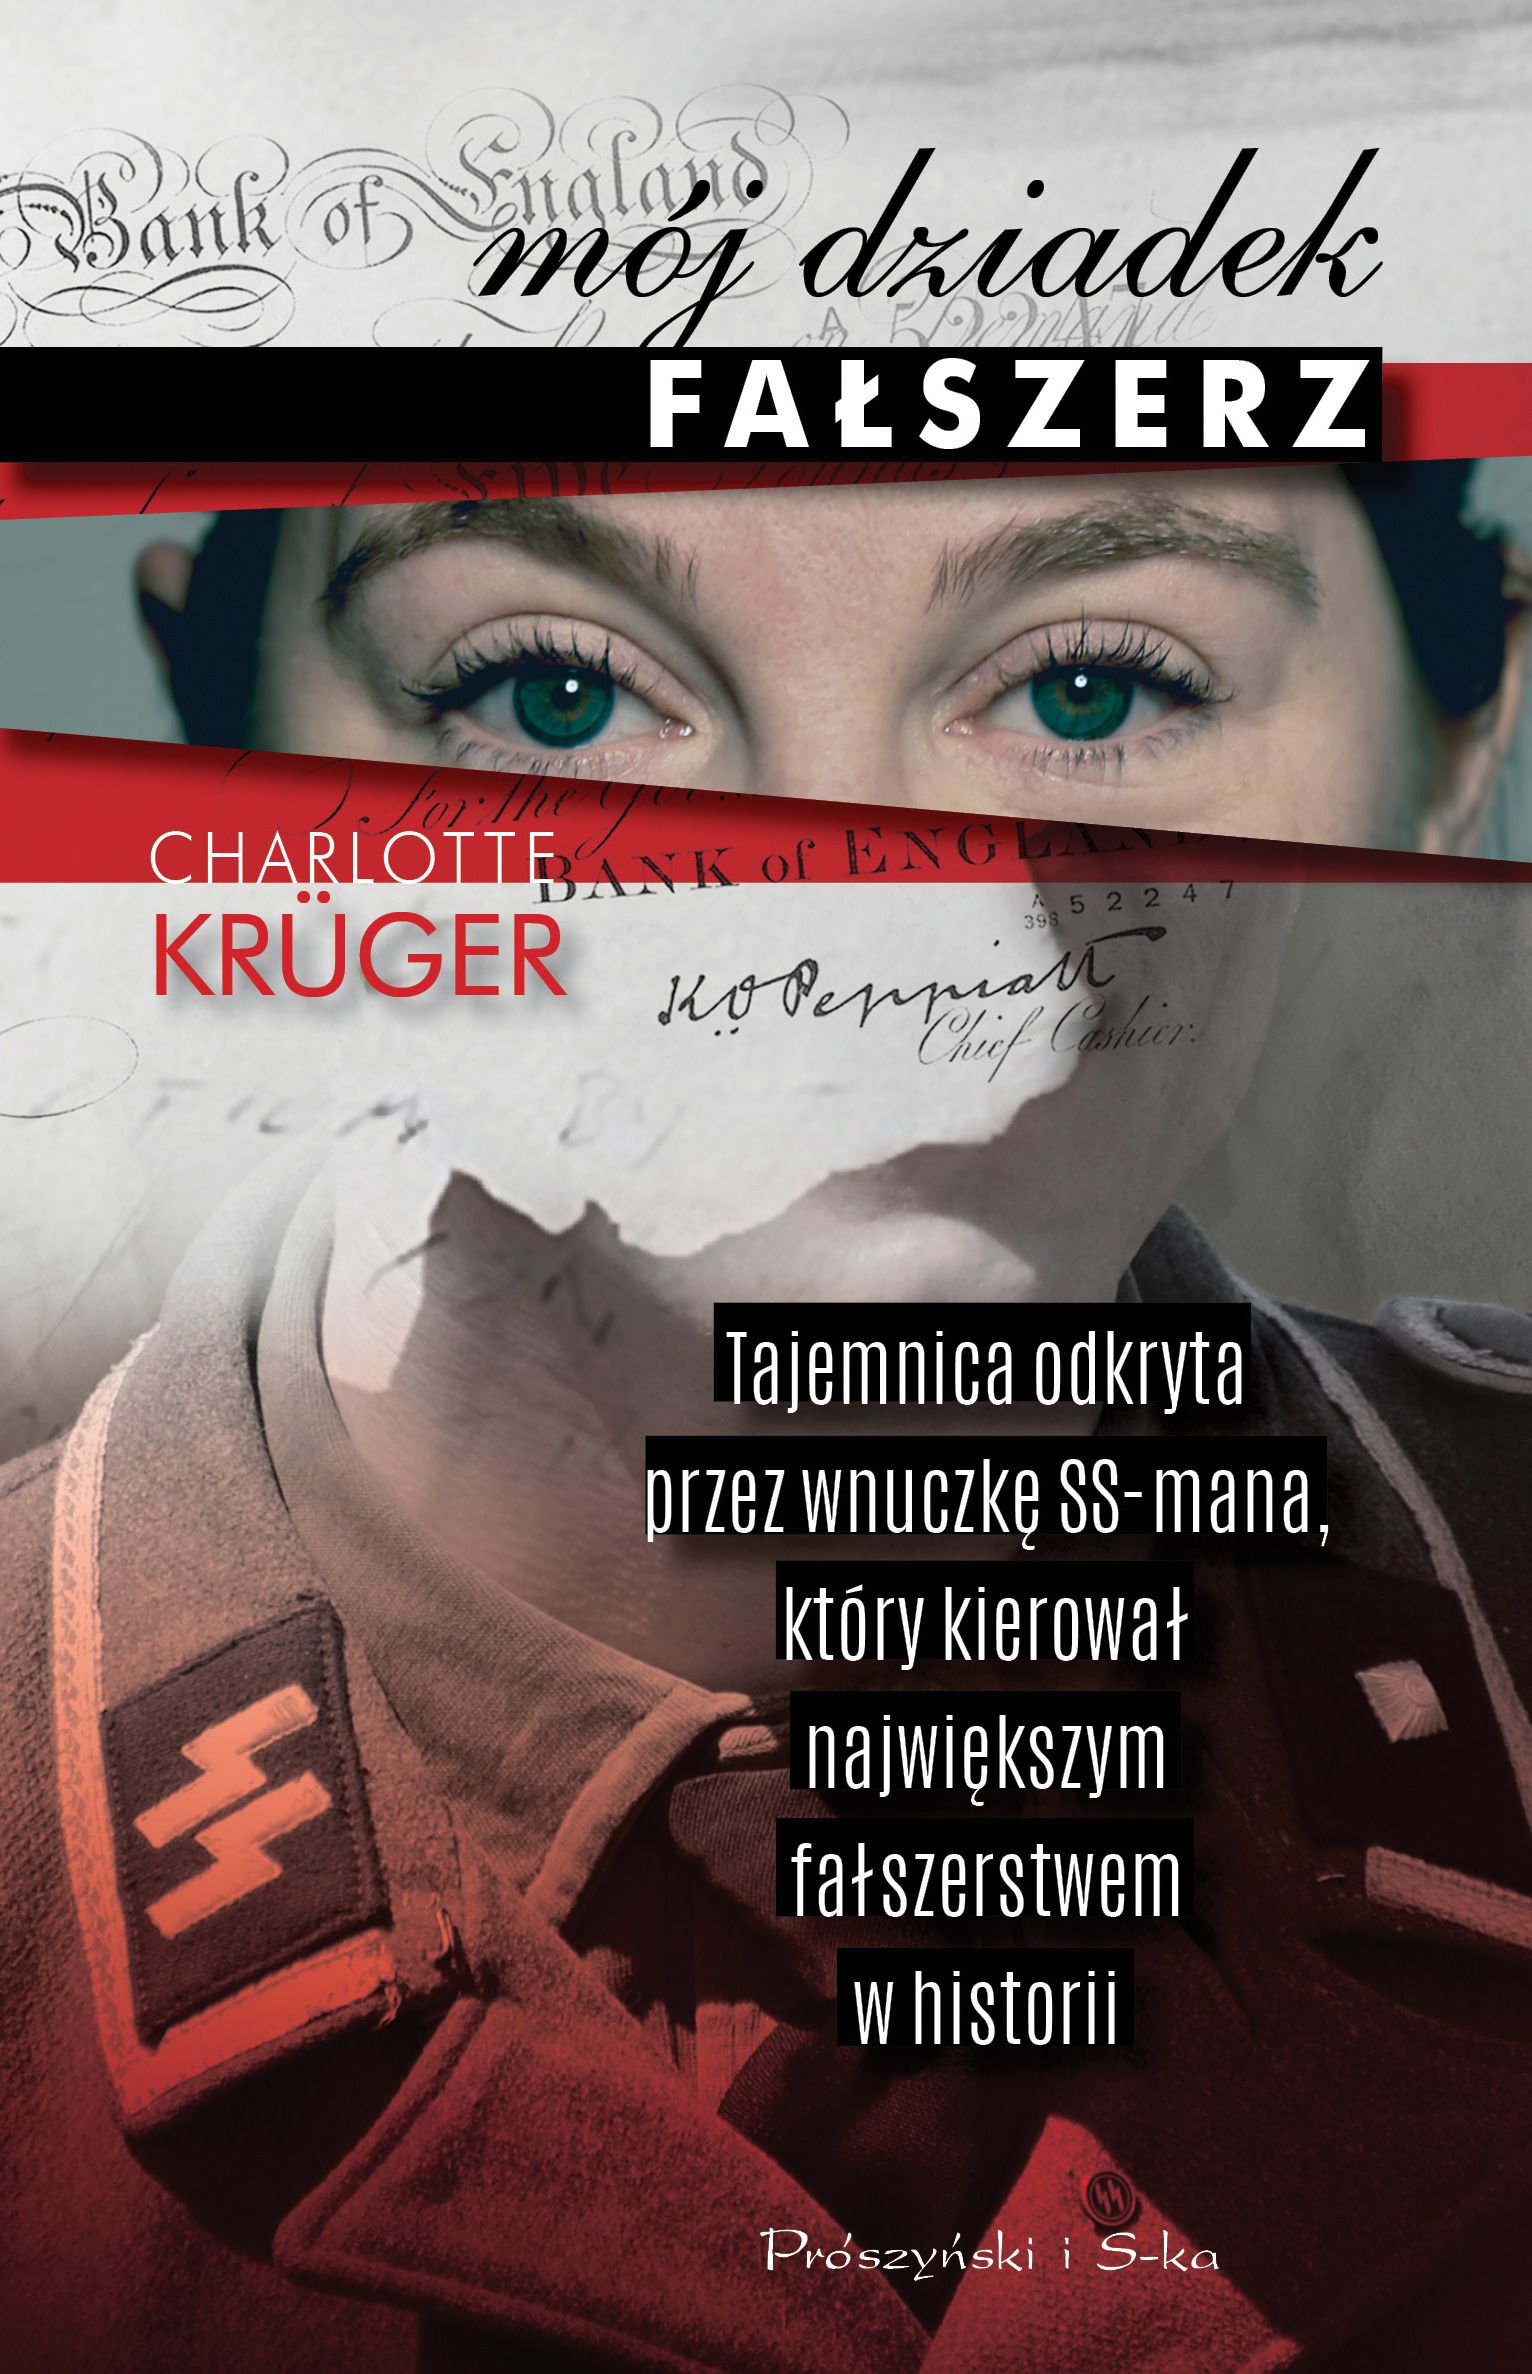 Artykuł powstał między innymi w oparciu o książkę Charlotte Krüger "Mój dziadek fałszerz", która właśnie ukazała się nakładem wydawnictwa Prószyński i S-ka.